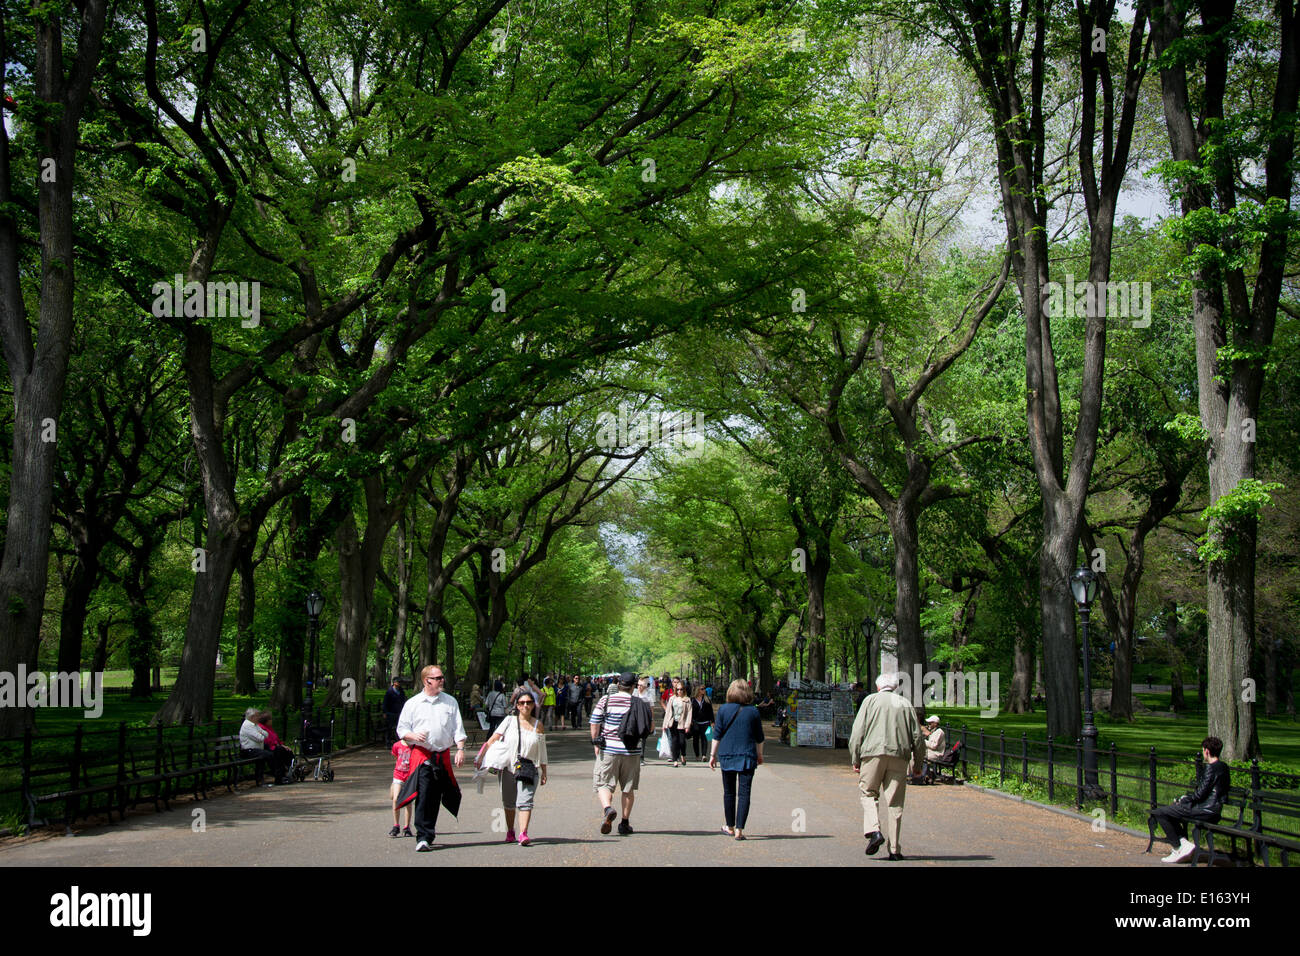 La marche de la section littéraire Mall à New York City's Central Park est une allée bordée de grands arbres d'Ormes. Banque D'Images